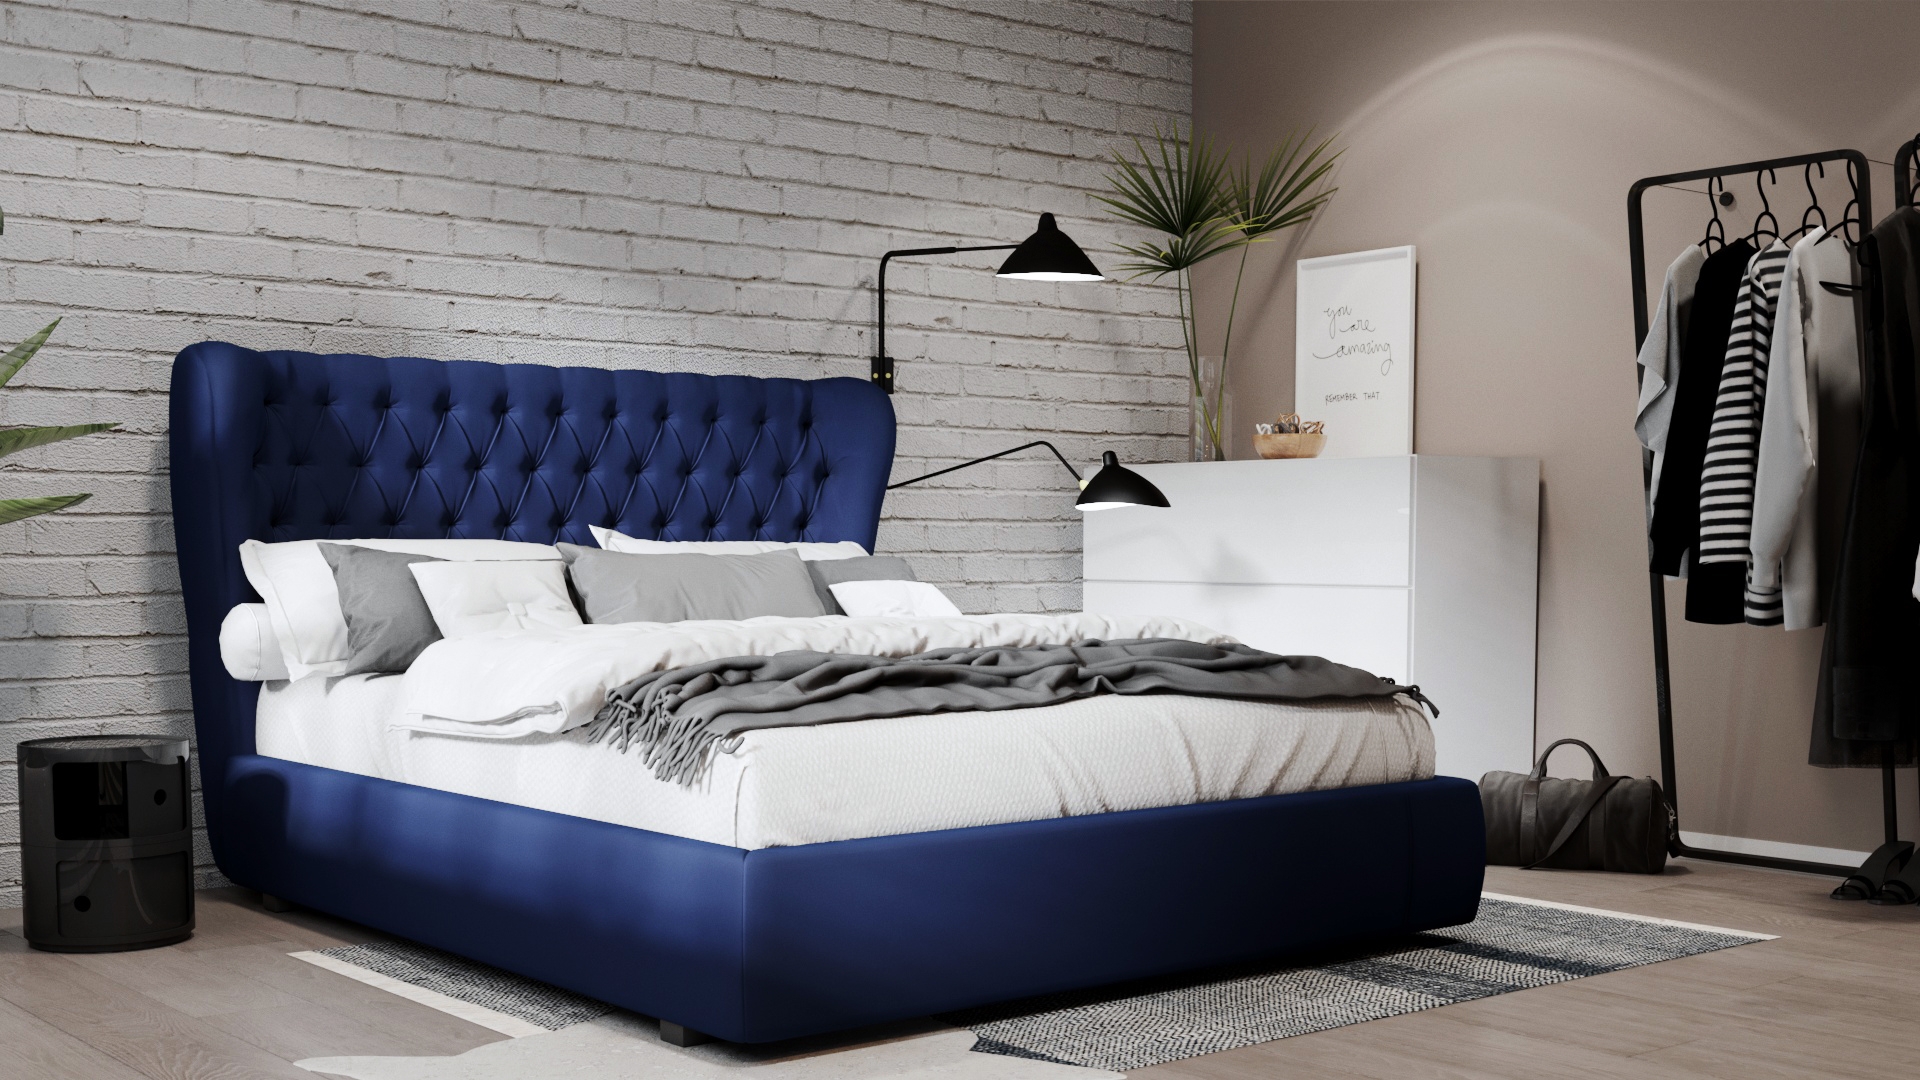 bundel Informeer maart Deco-tips 5 Diiiz tweepersoonsbedden voor een trendy slaapkamer